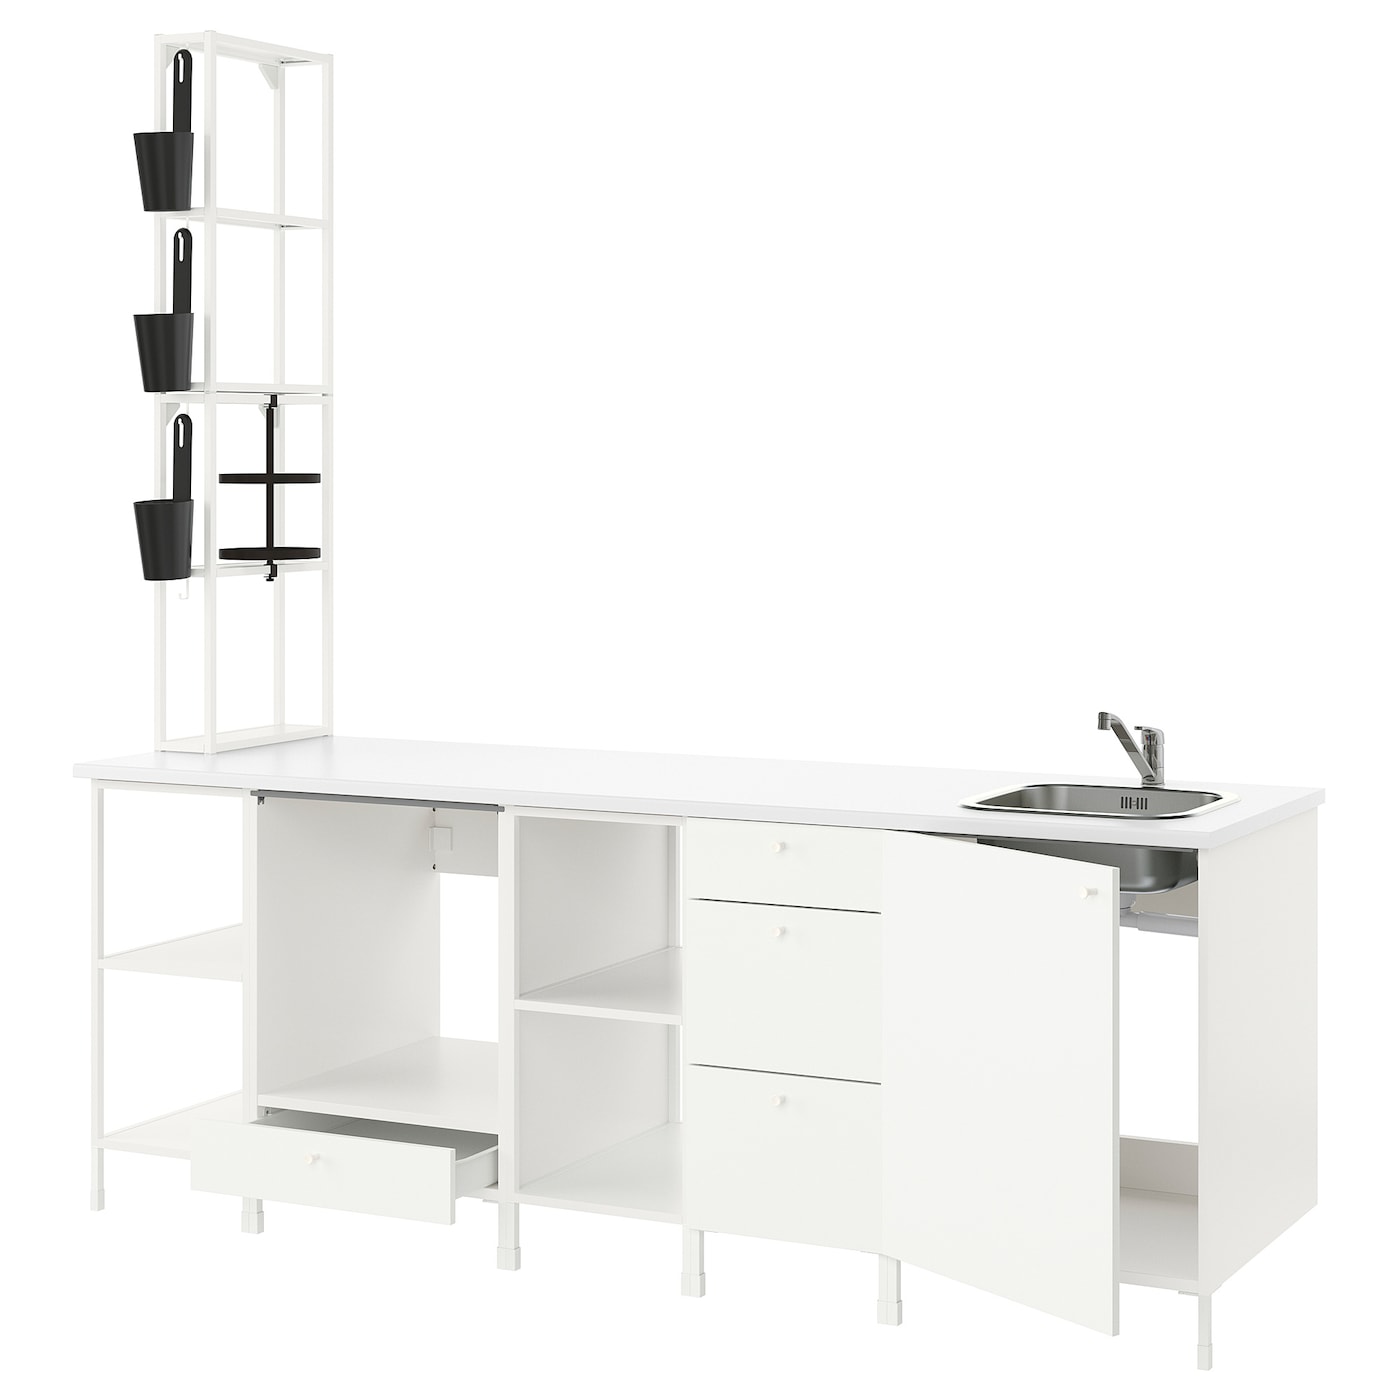 Кухня -  ENHET  IKEA/ ЭНХЕТ ИКЕА, 243х241 см, белый